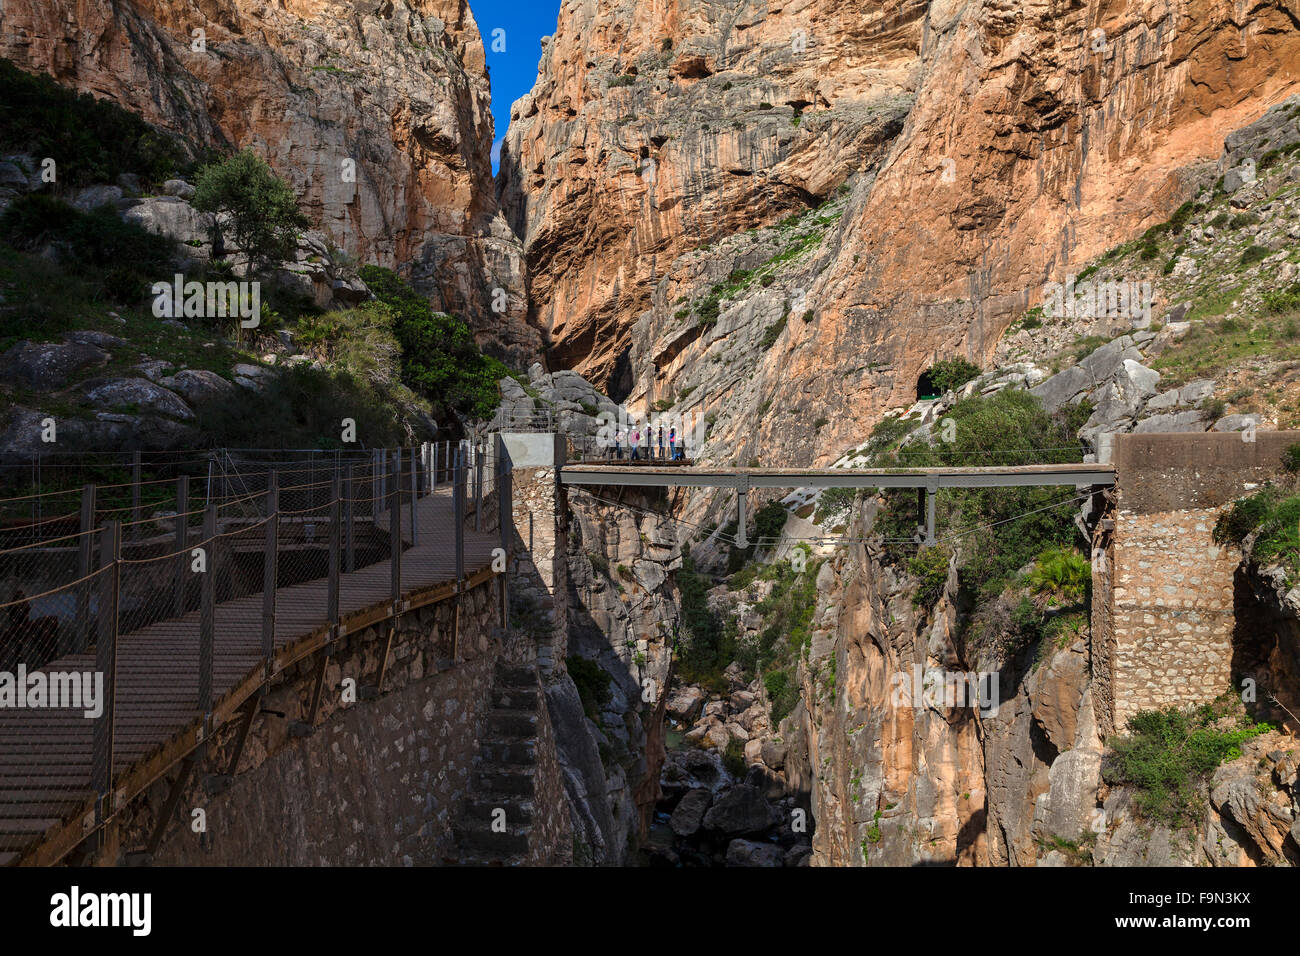 El Caminito del Rey est un passage couvert, coincé le long des parois d'une gorge étroite à El Chorro, près de Malaga, Andalousie, Espagne Banque D'Images